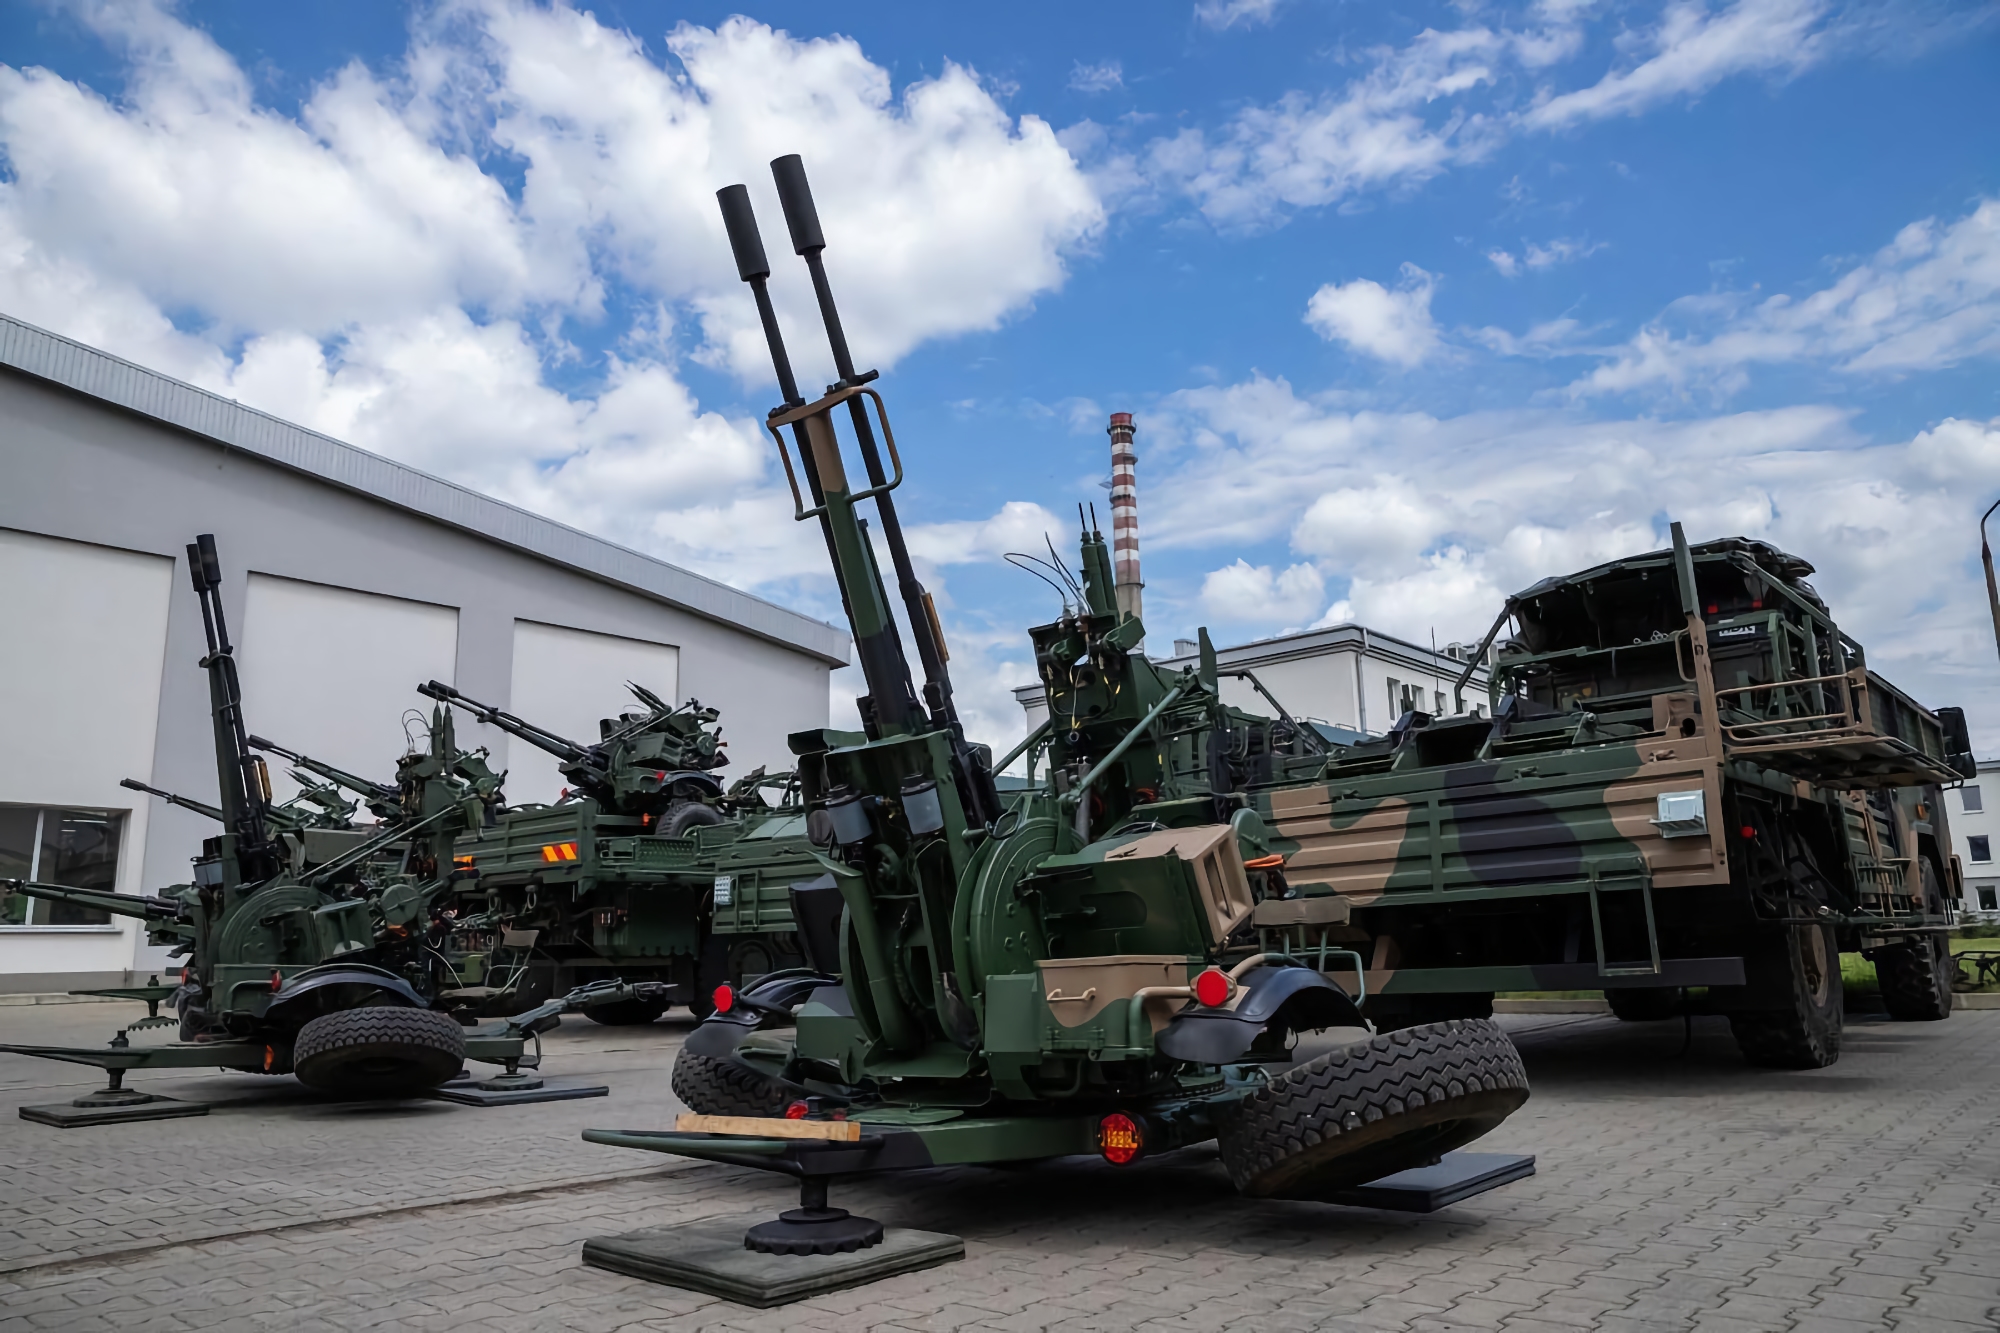 Pokrowiec na systemy przeciwlotnicze Patriot: Polska planuje zakup rakiet przeciwlotniczych Pilica + i systemów artyleryjskich z pociskami CAMM, będą one w stanie trafiać w cele na odległość ponad 25 km